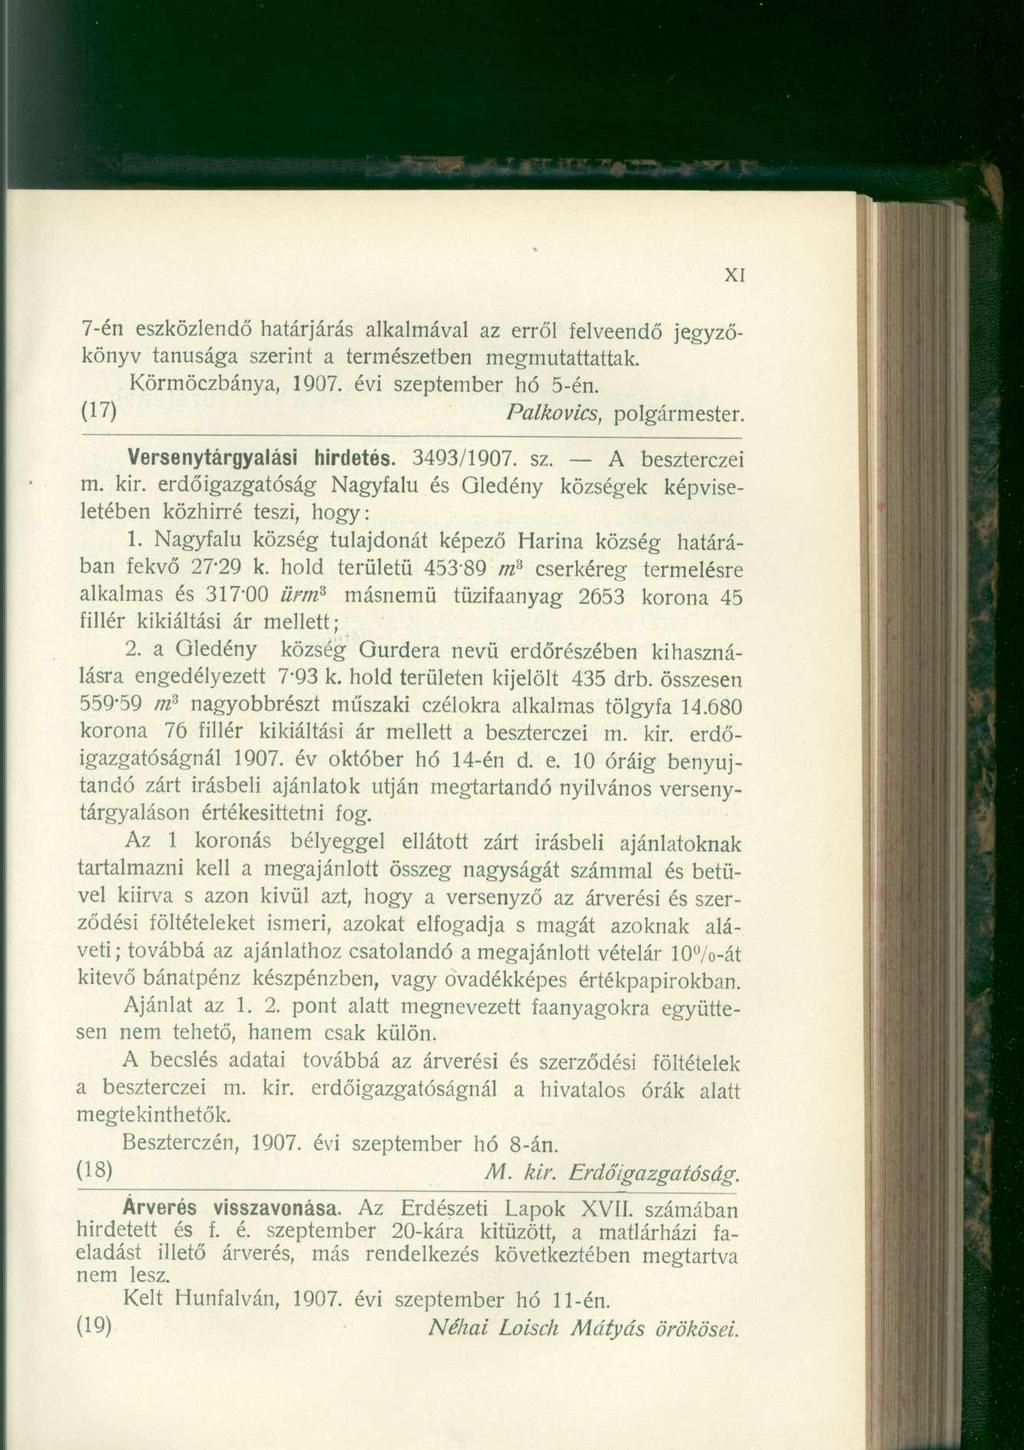 7-én eszközlendő határjárás alkalmával az erről felveendő jegyzőkönyv tanúsága szerint a természetben megmutattattak. Körmöczbánya, 1907. évi szeptember hó 5-én. (17) Palkovics, polgármester.